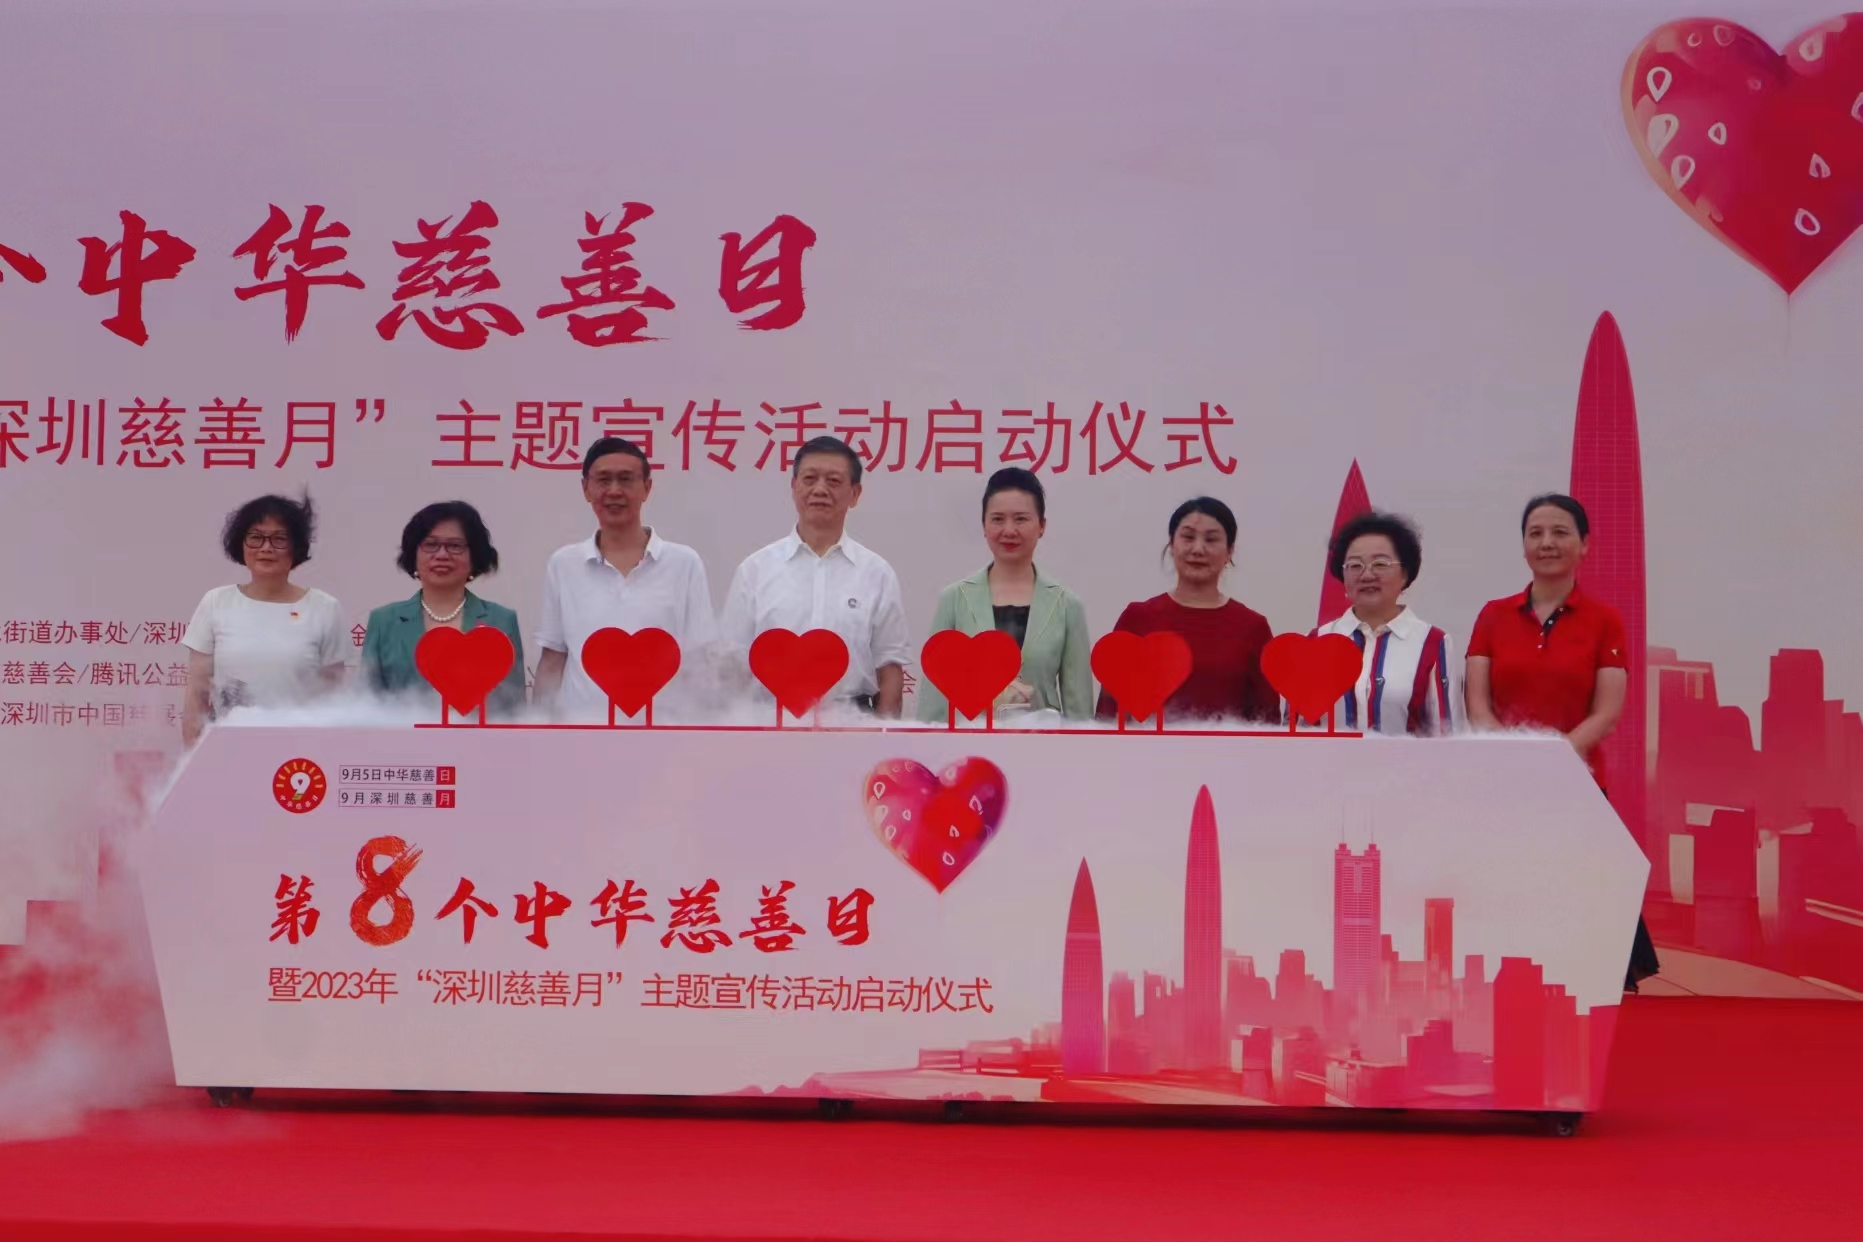  深圳舉行第八個「中華慈善日」暨2023年「深圳慈善月」啟動儀式